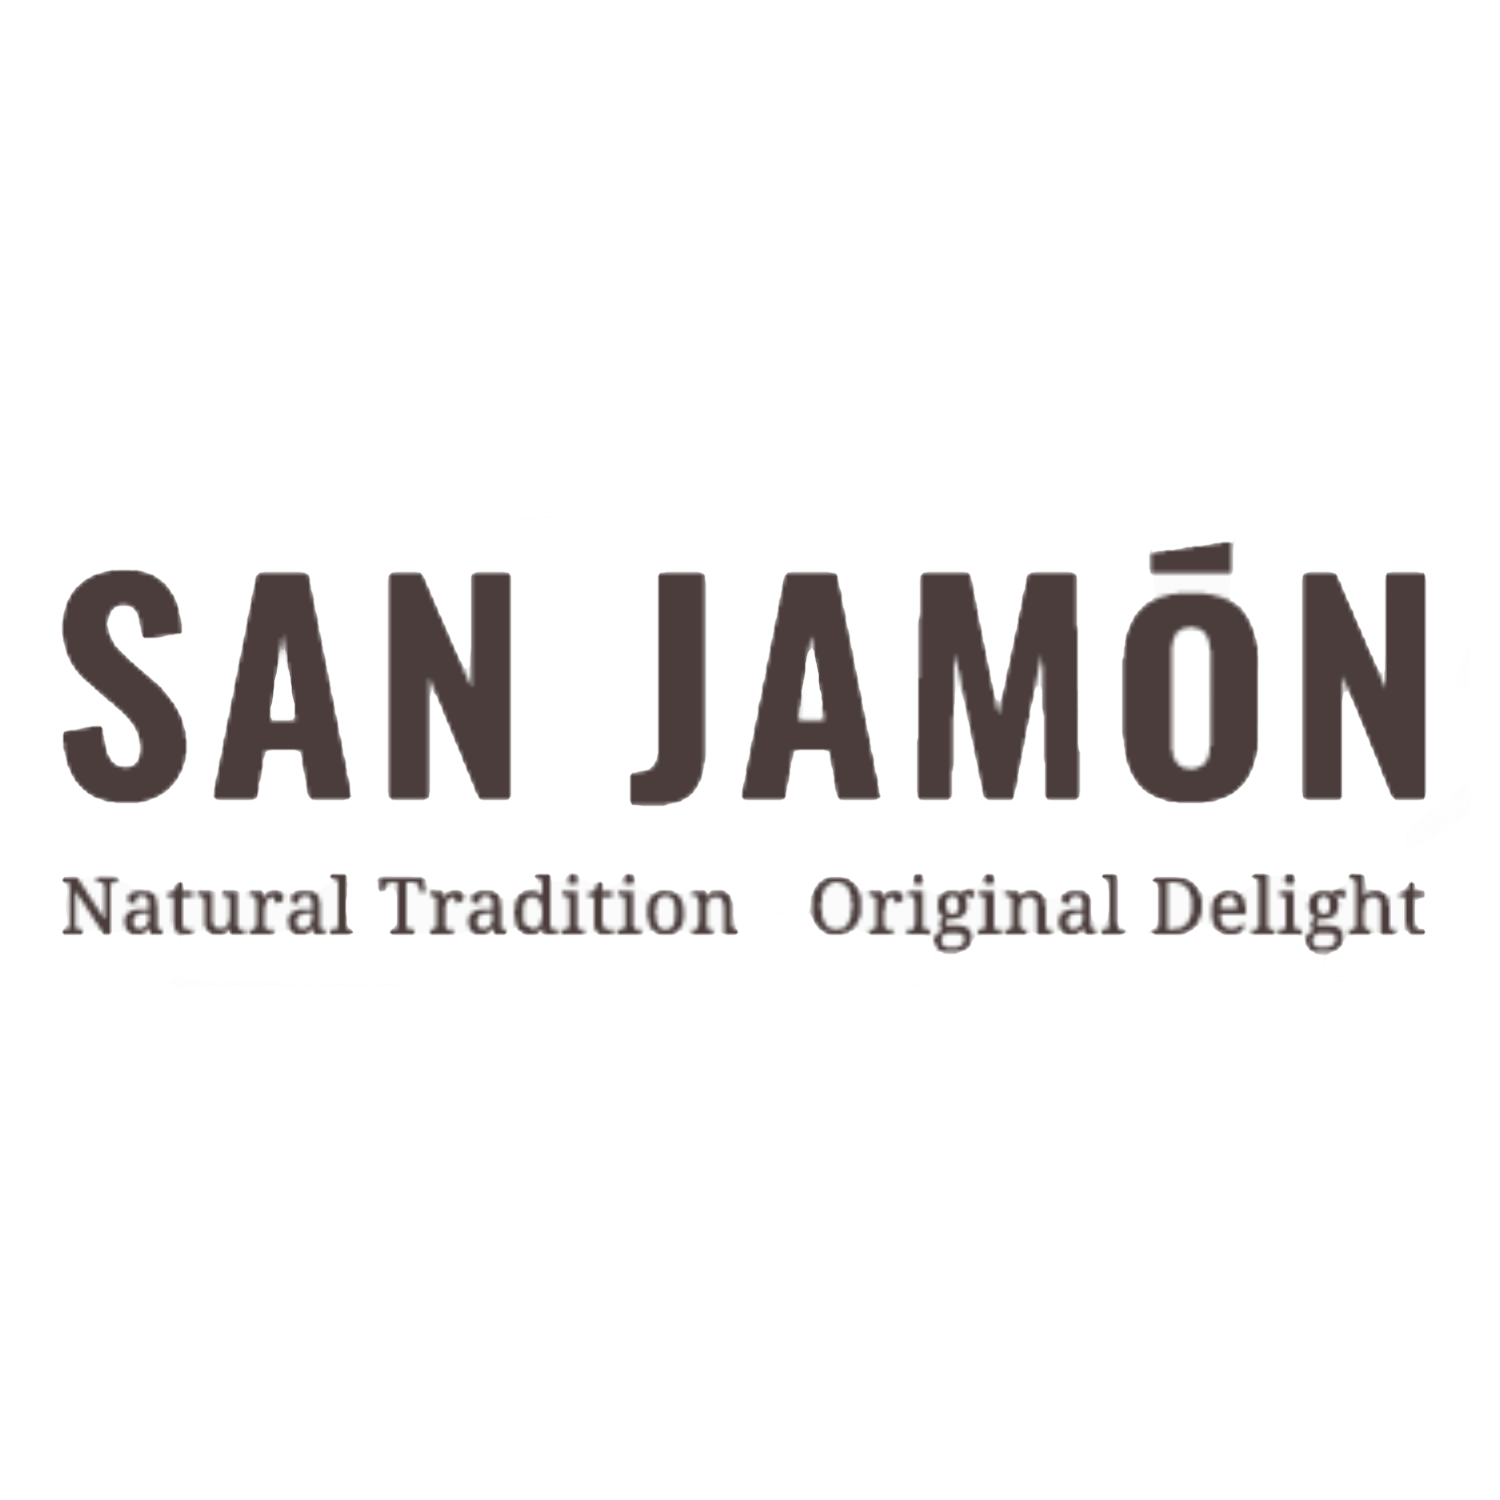 San Jamon logo